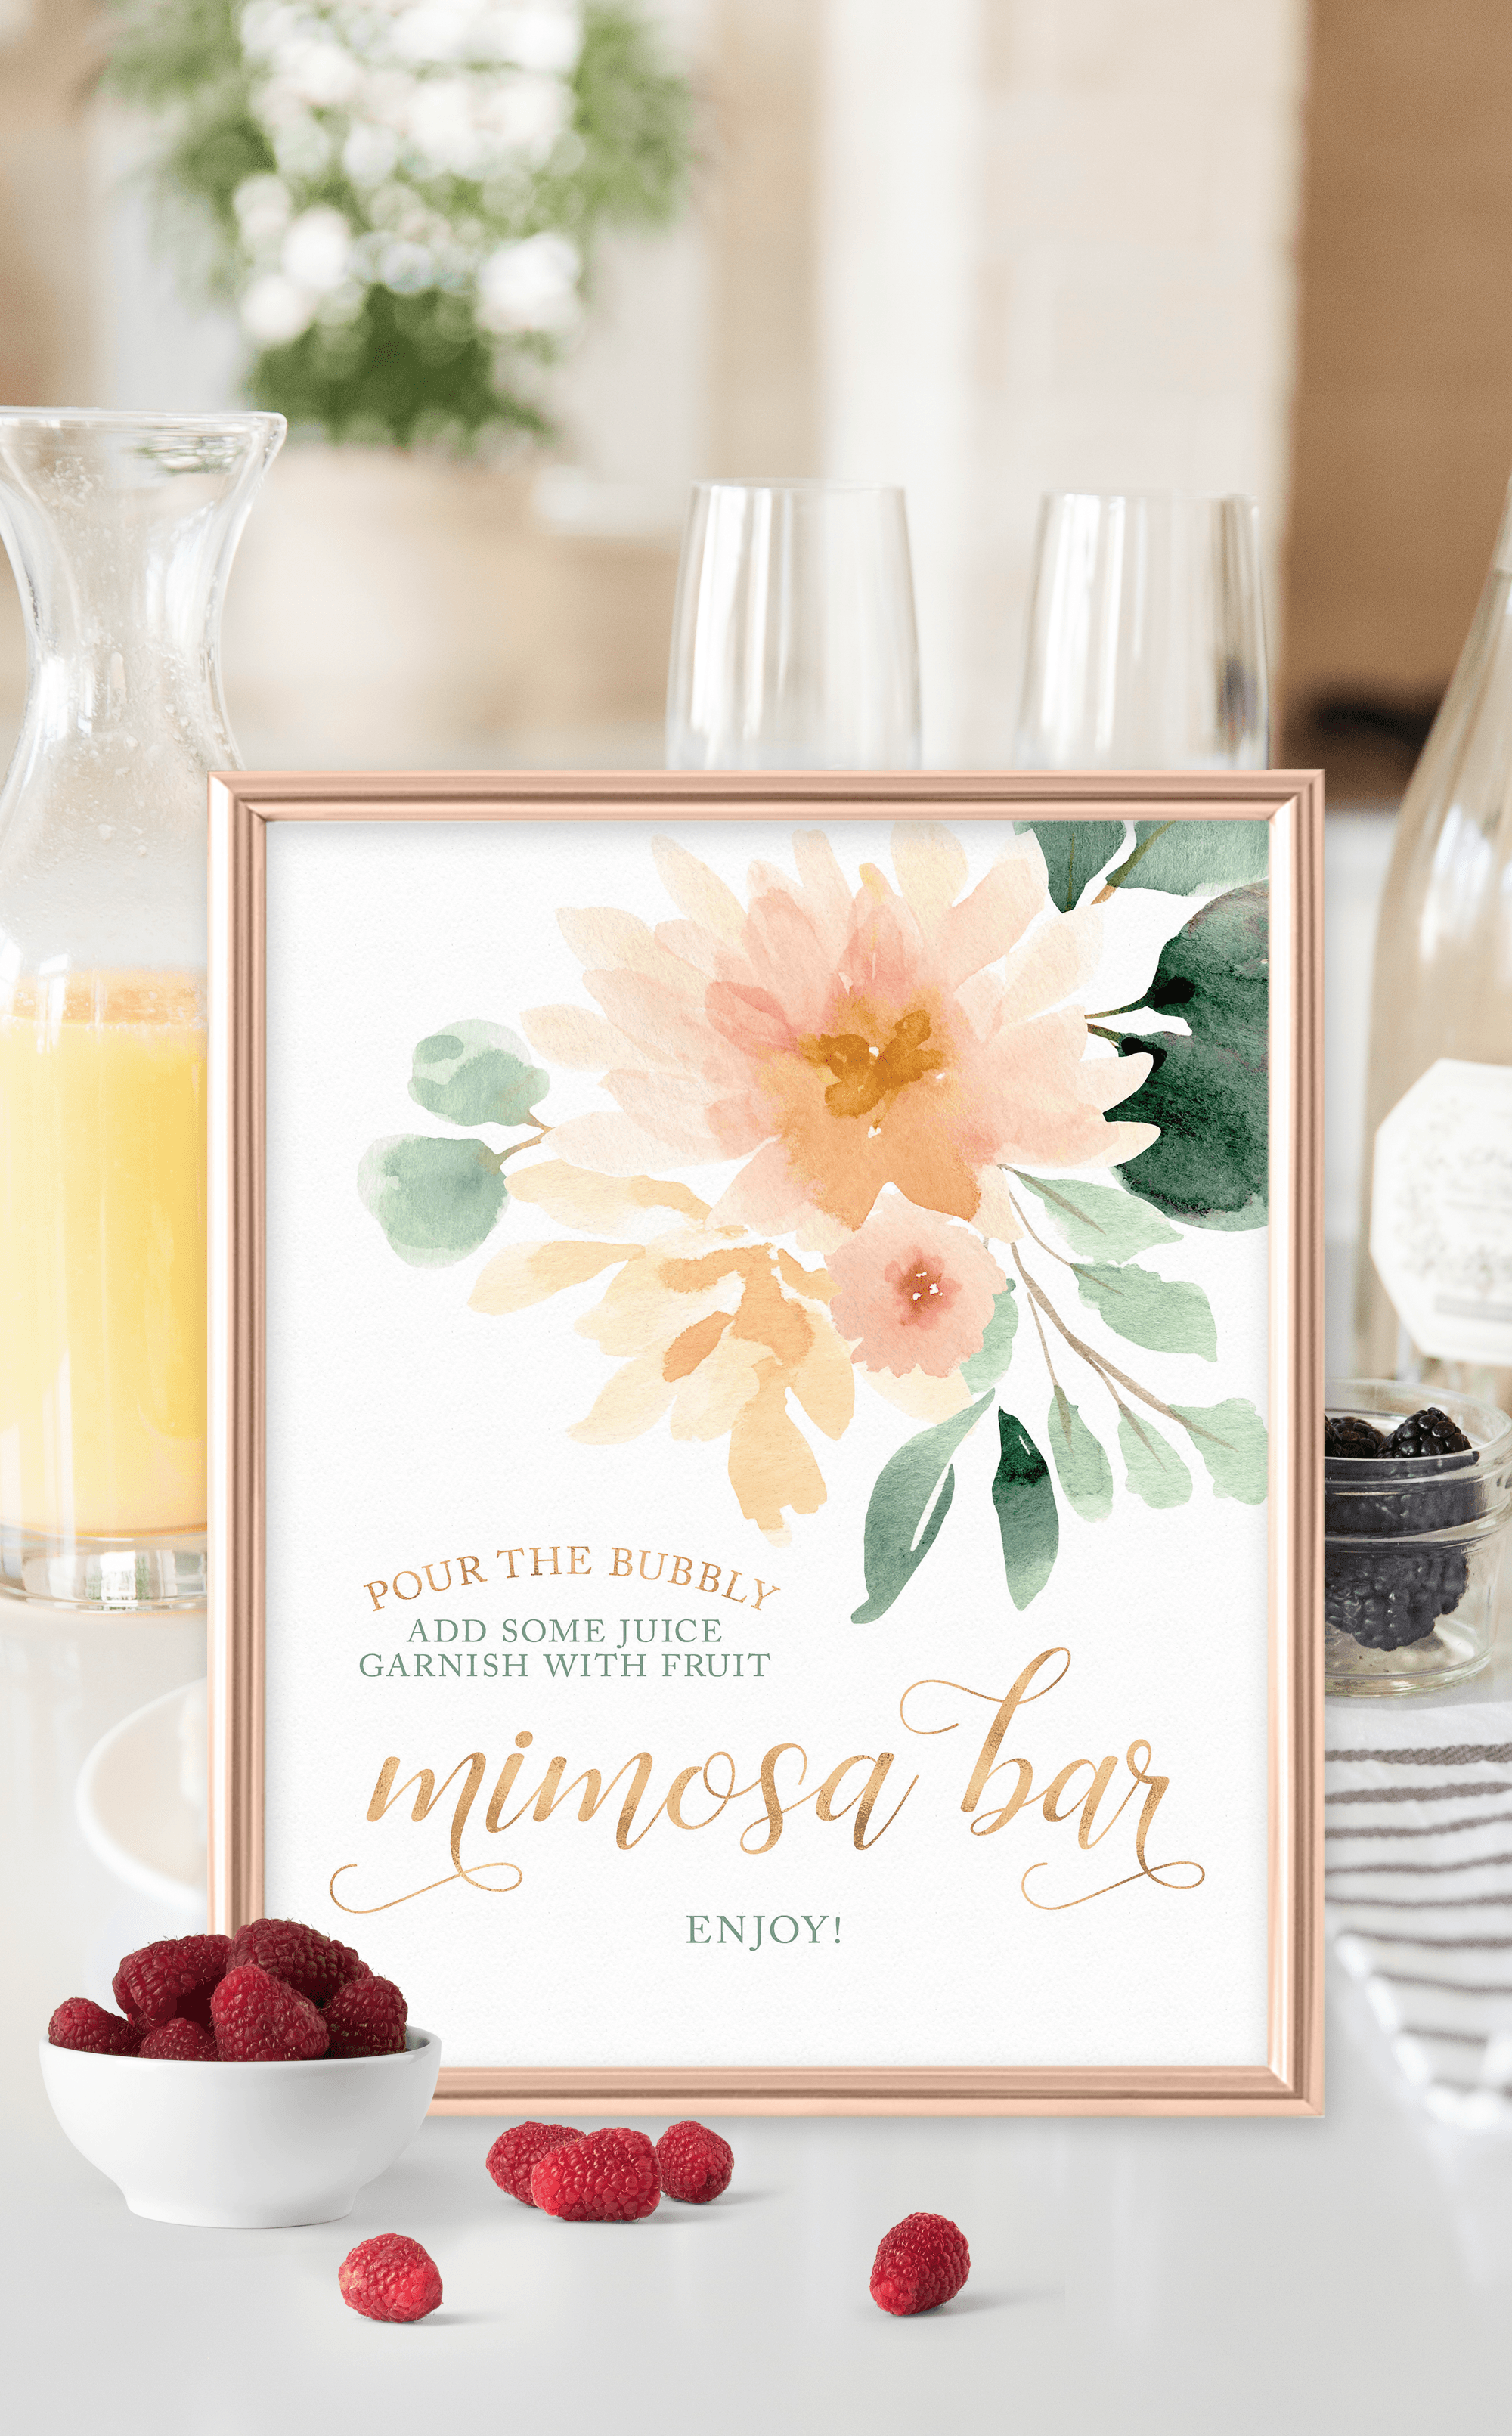 DIY Mimosa Bar Guide: How To Set Up + FREE Mimosa Bar Printables